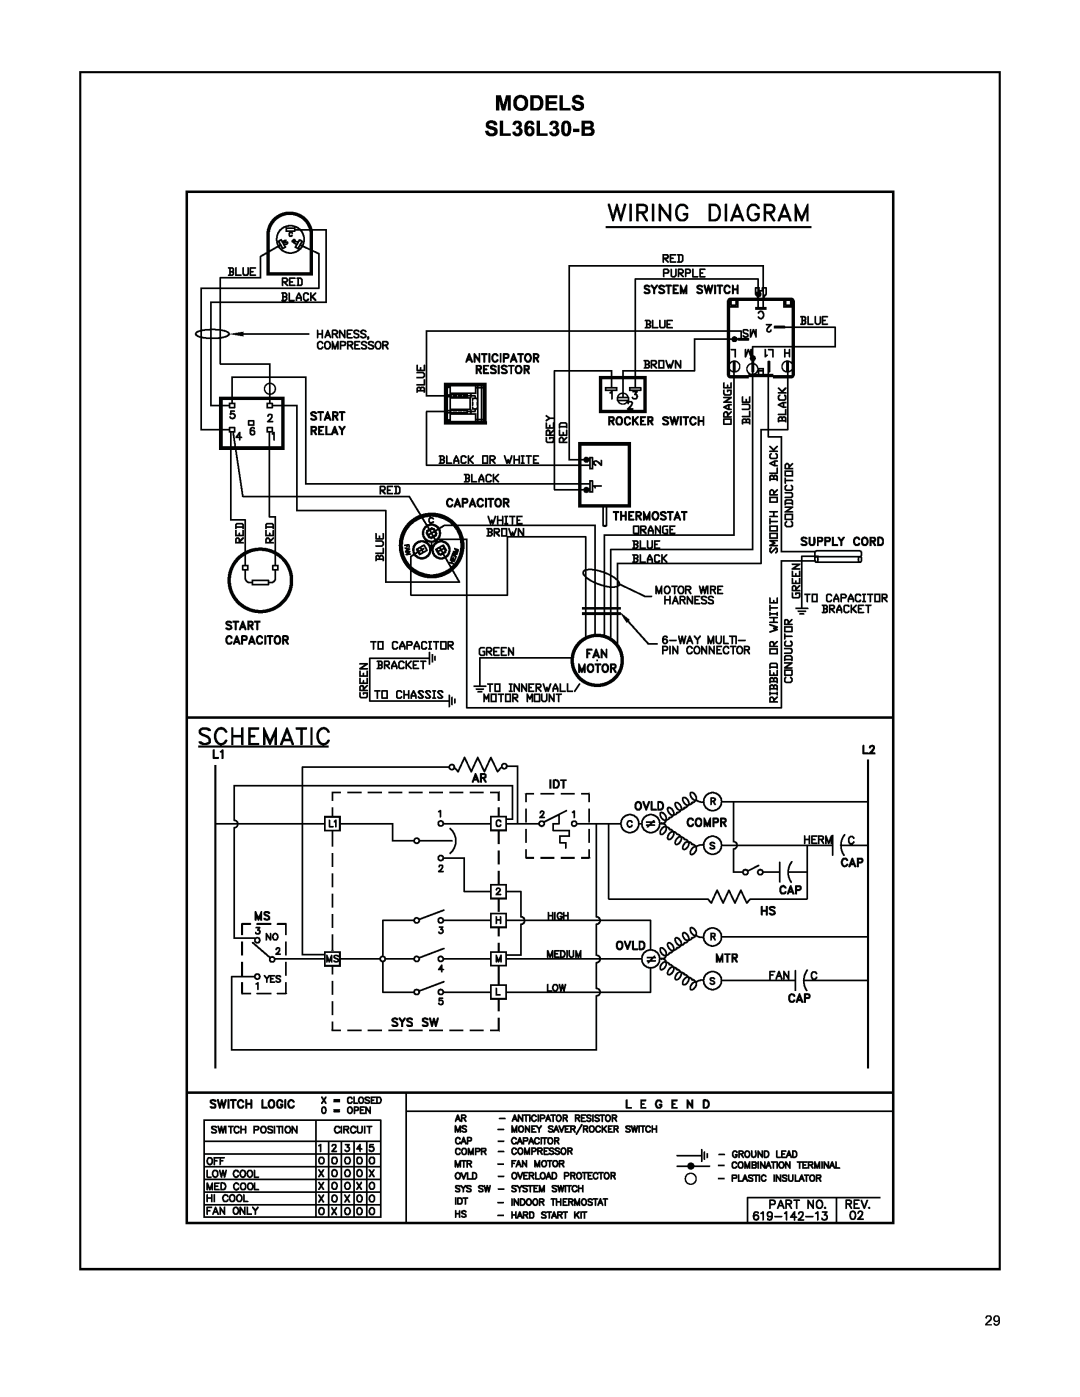 Friedrich RAC-SVC-06 service manual SL36L30-B, Models 